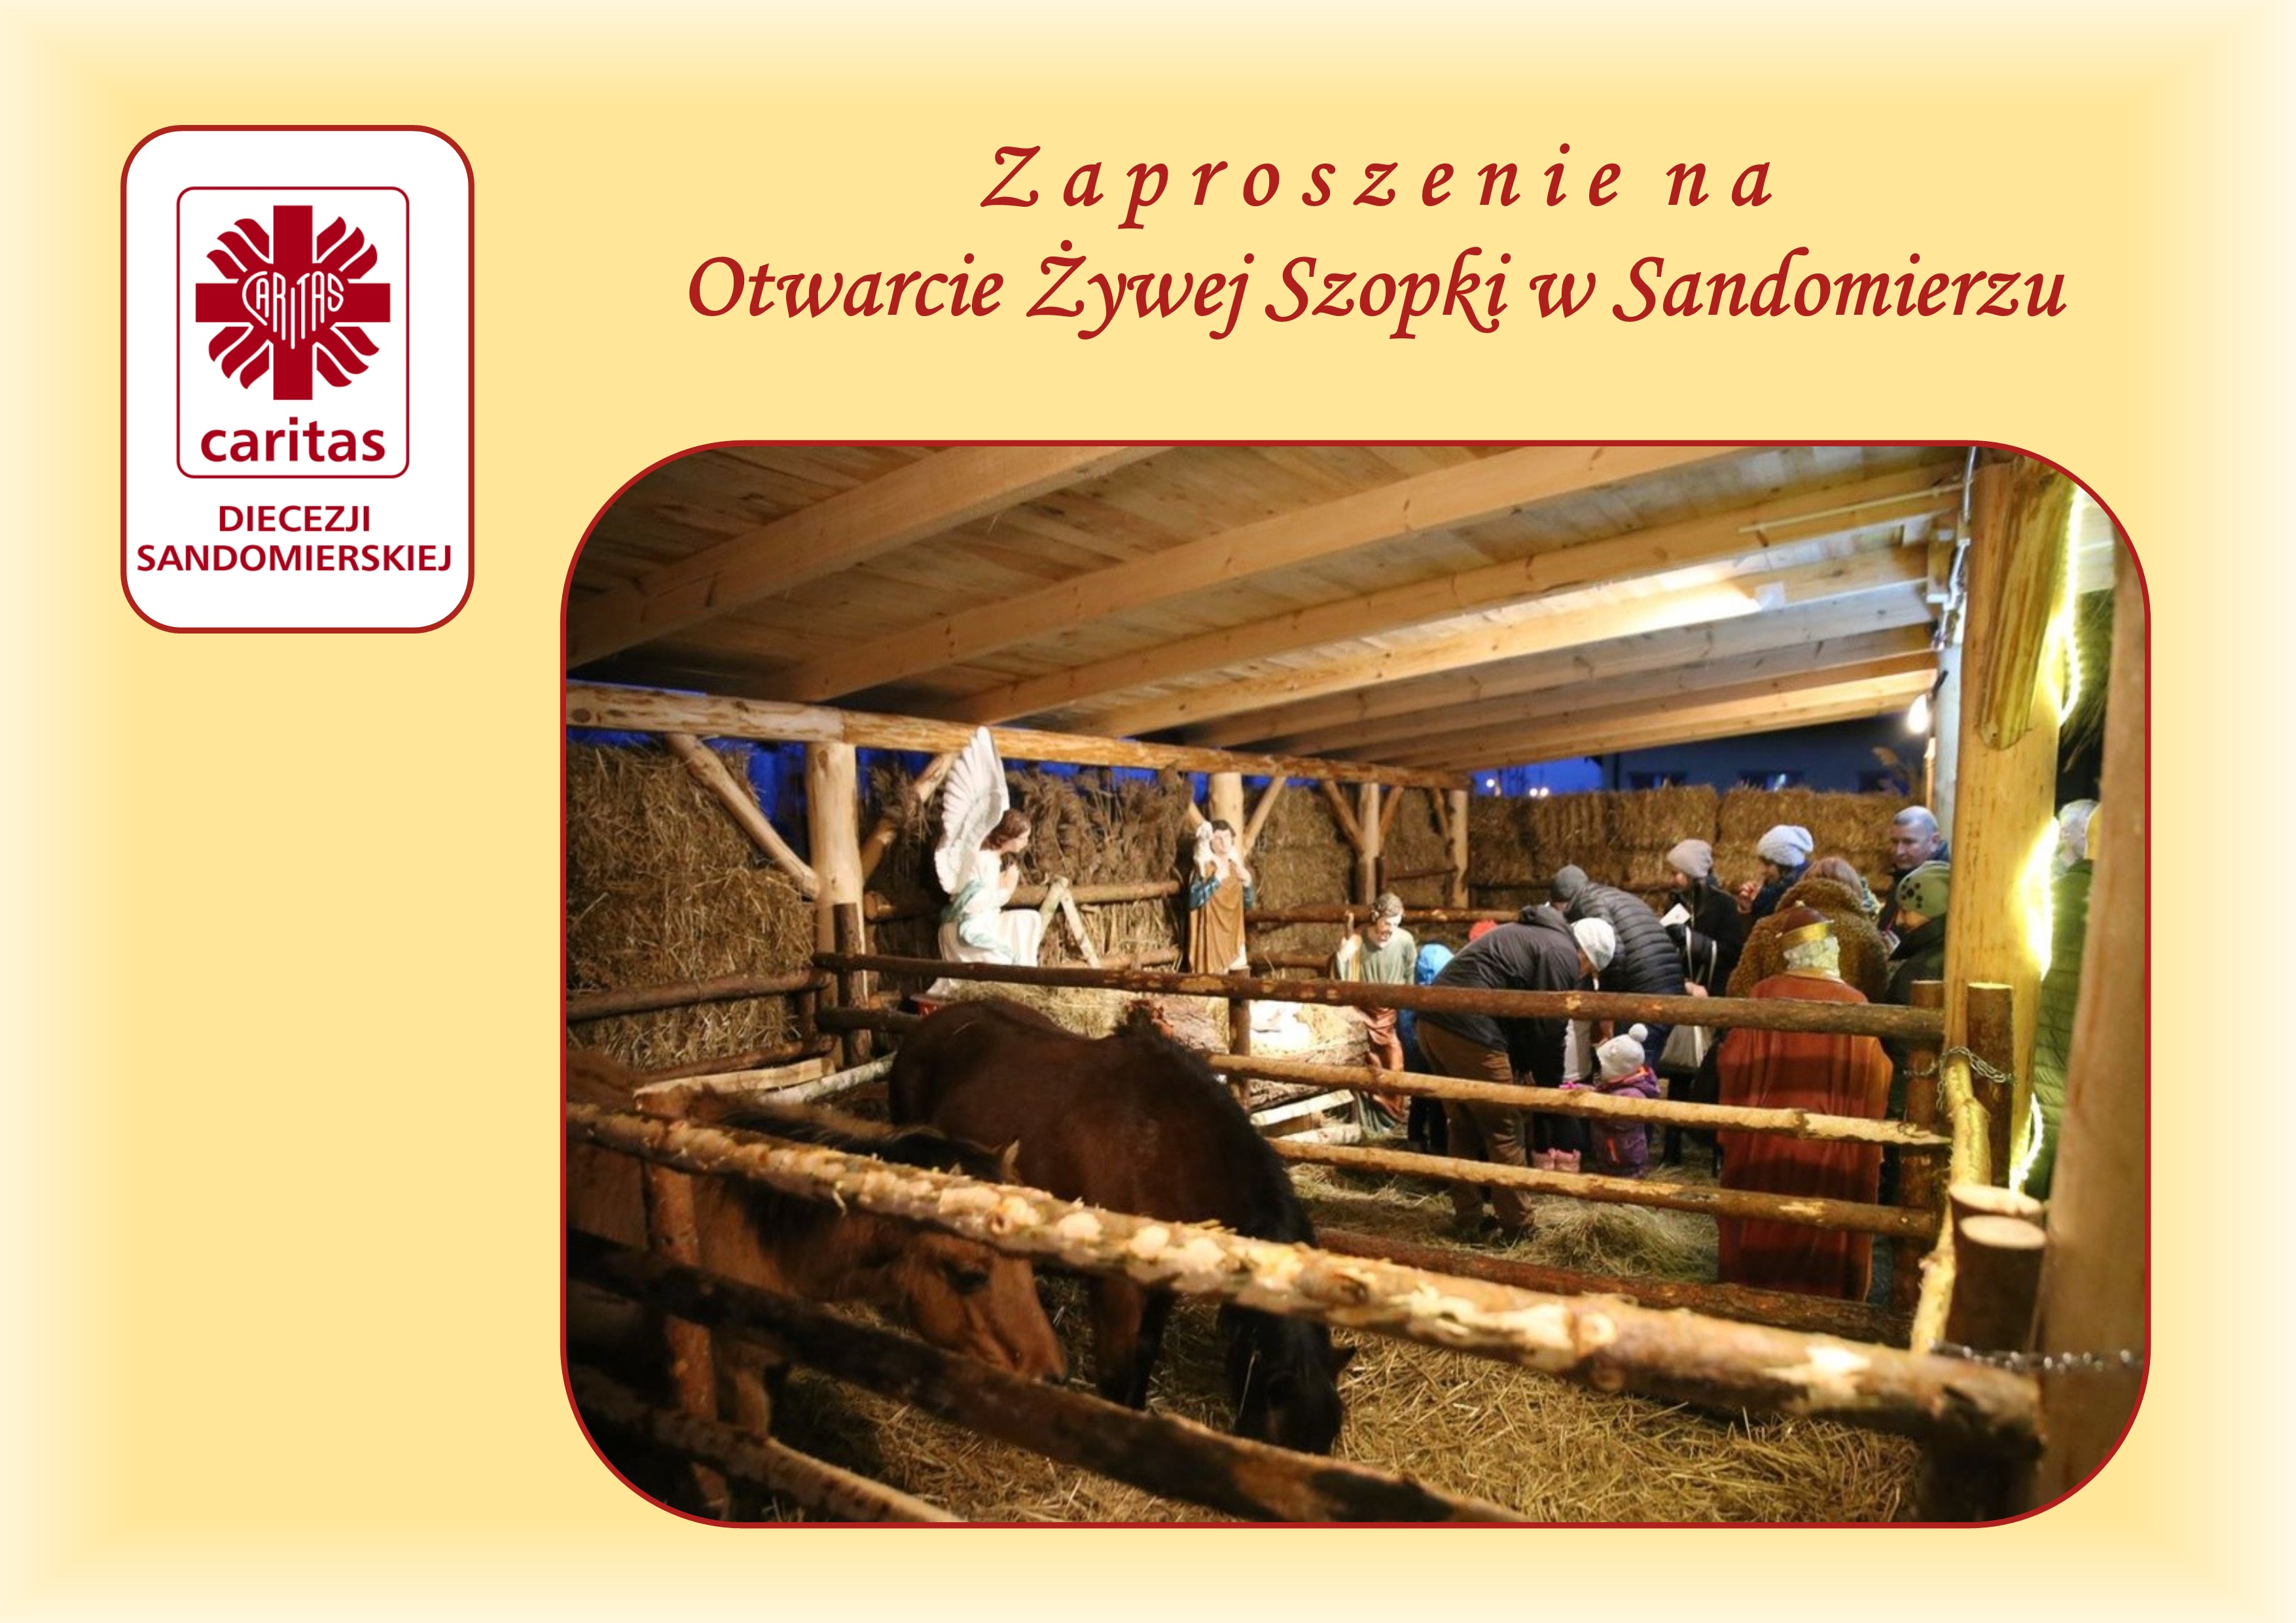 Otwarcie Żywej Szopki w Sandomierzu